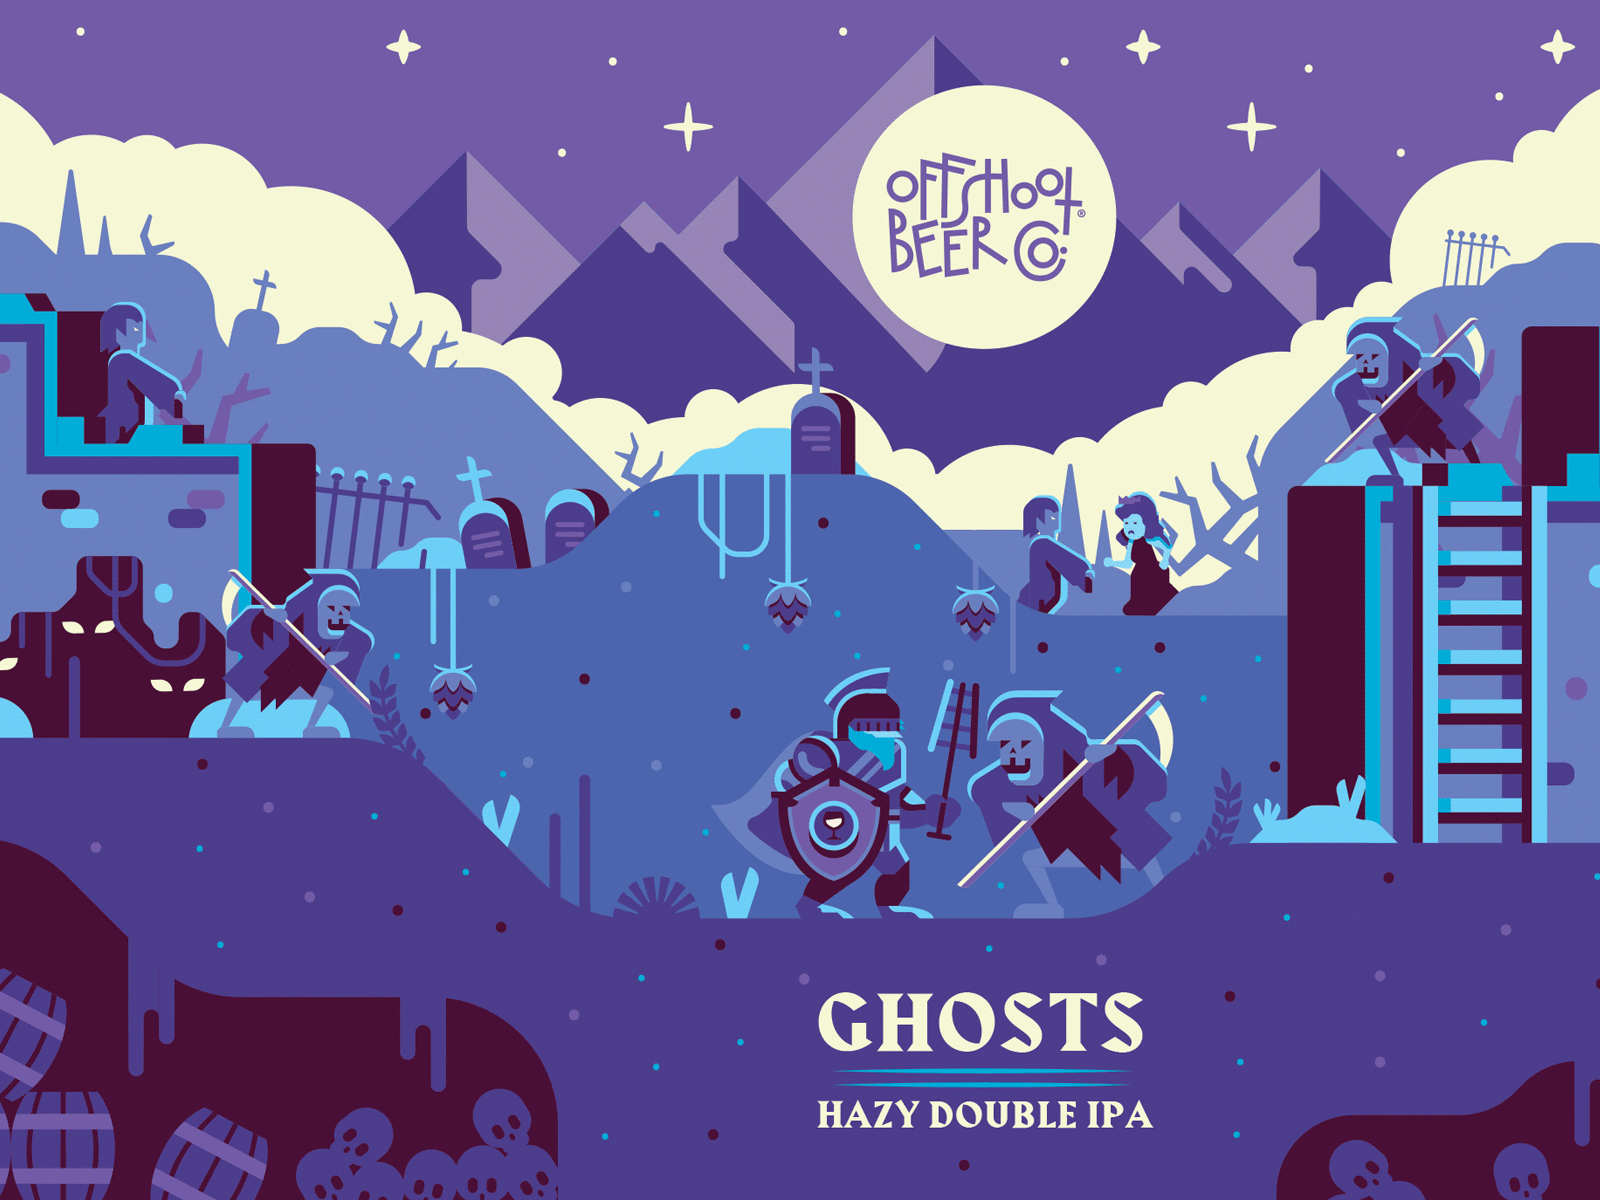 OffShoot Ghosts beer beer label ghosts halloween illustration